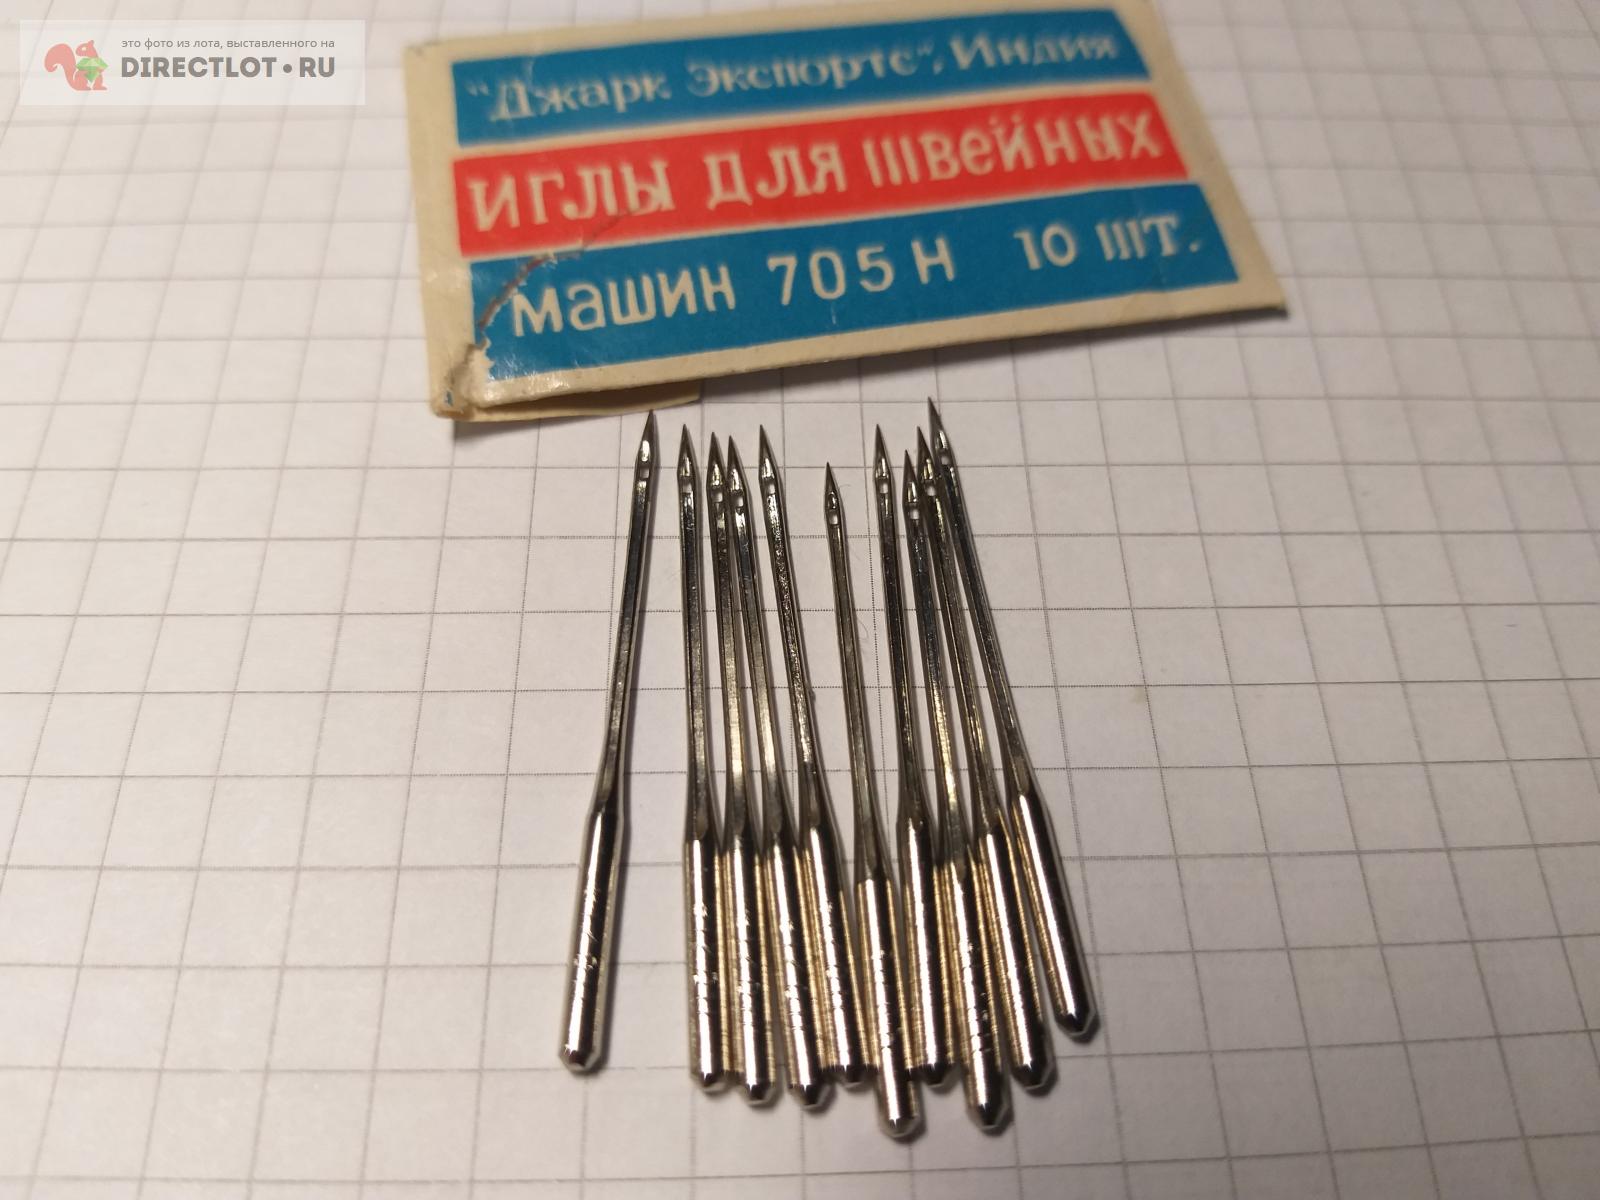 Игла для швейной машины 705Н маркировка иглы 110/18  в Саратове .